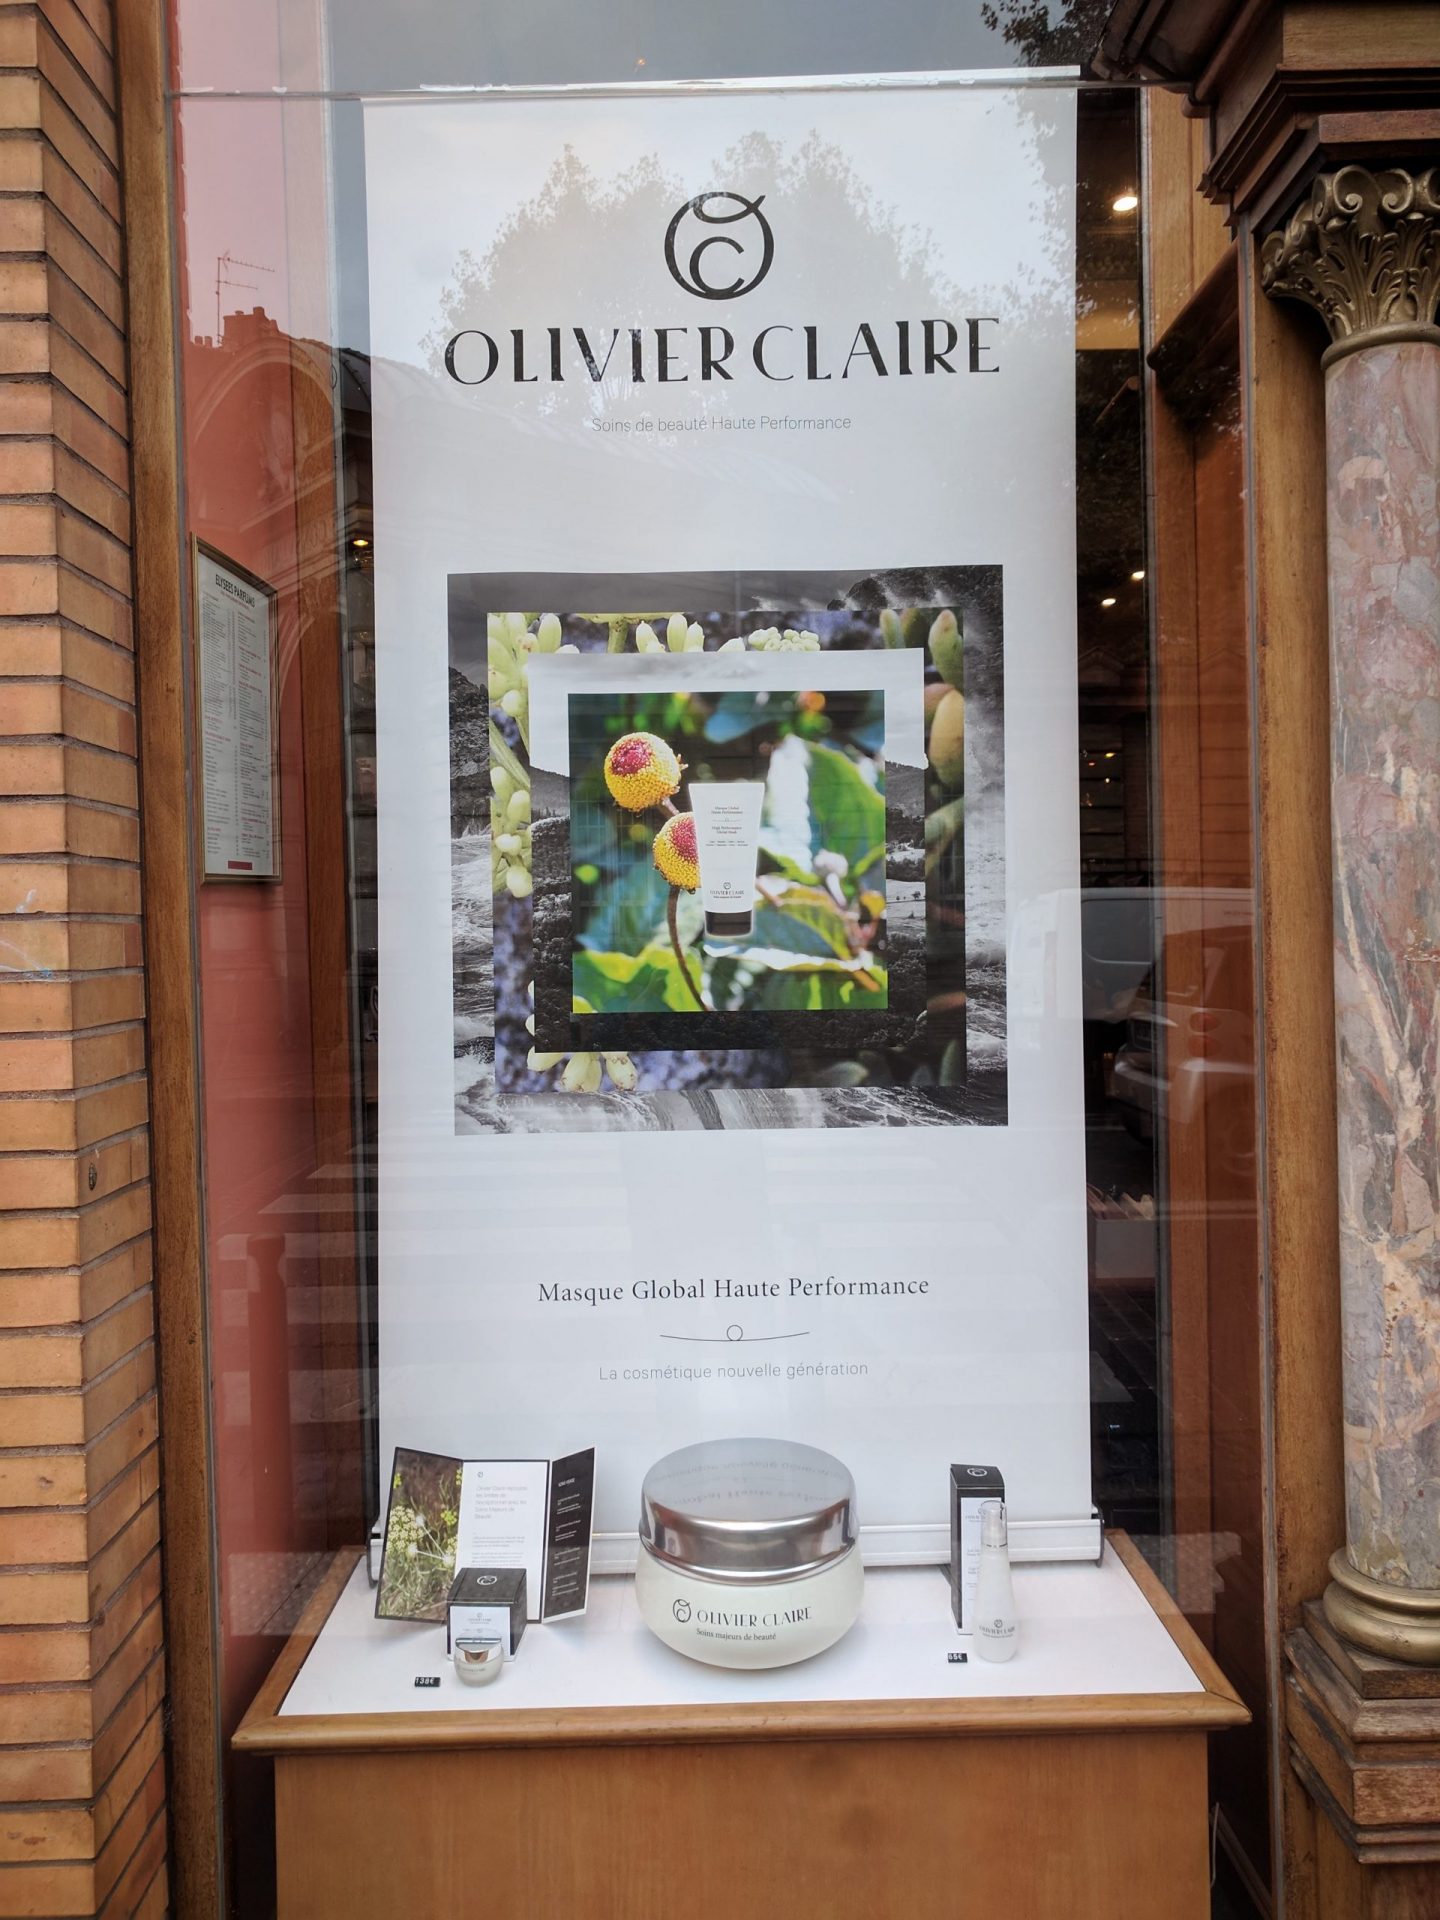 Image montrant la reproduction en impression 3D d'un pot de crème de la marque Olivier Claire agrandi 5 fois, dans la vitrine d'une boutique